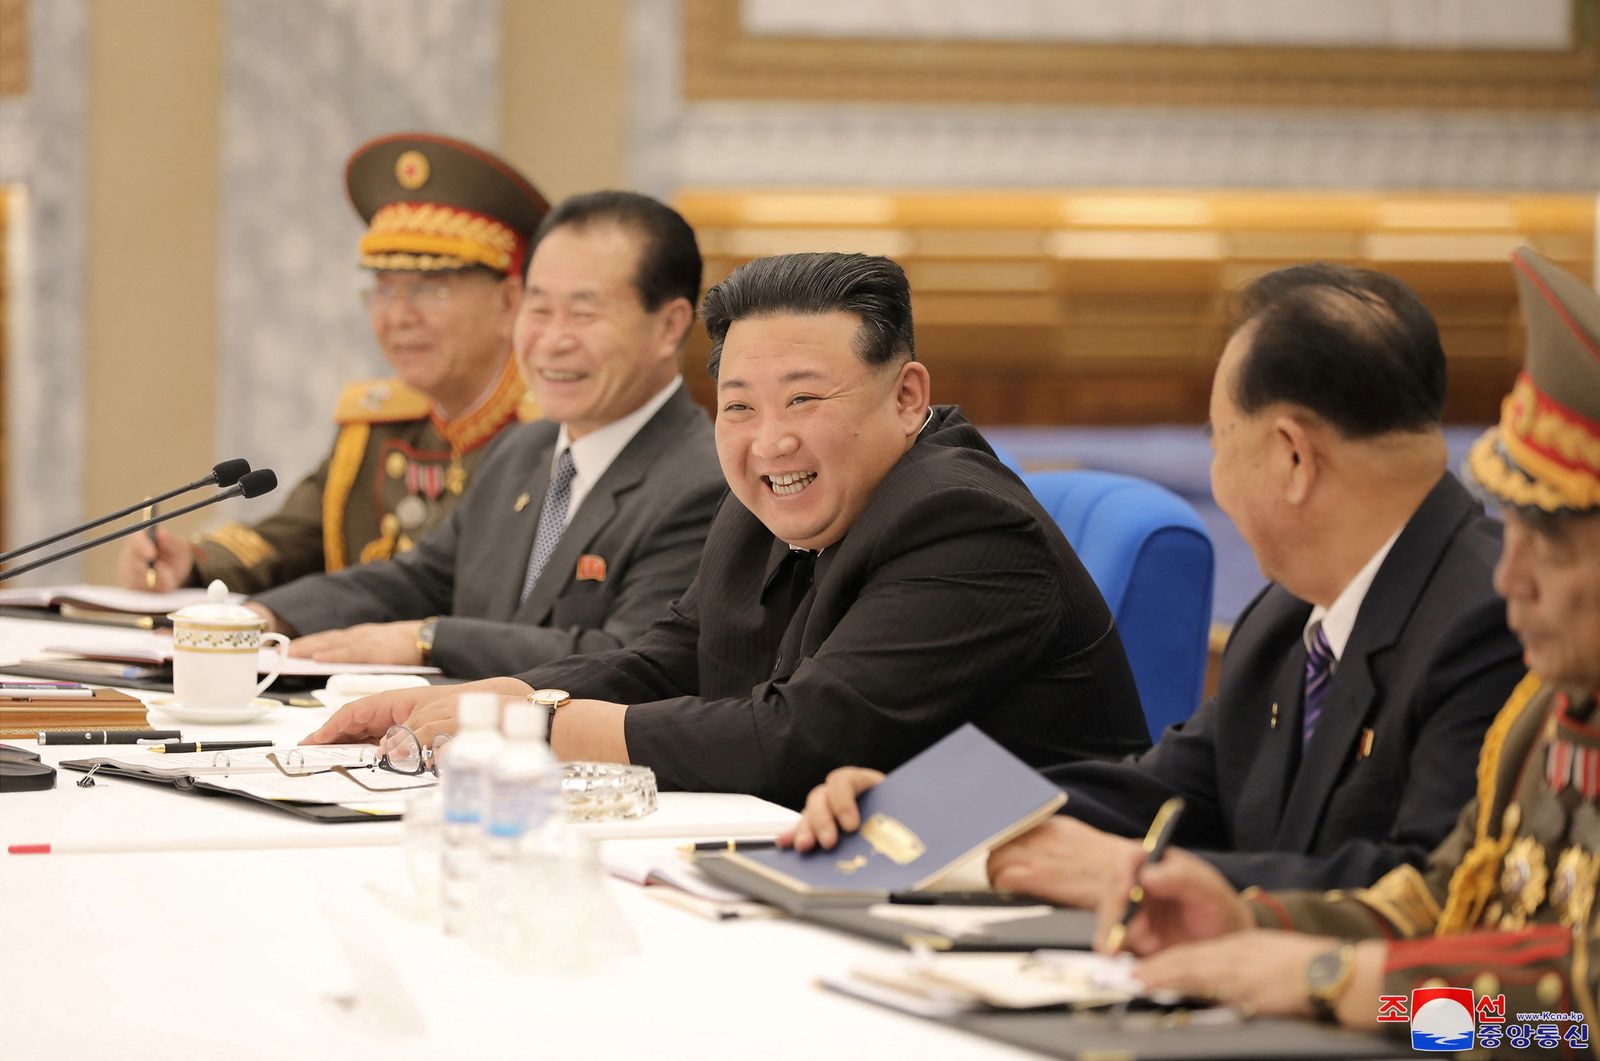 زعيم كوريا الشمالية كيم جونج أون في اجتماع اللجنة العسكرية المركزية لحزب العمال الكوري. 23 يونيو 2022.  - via REUTERS